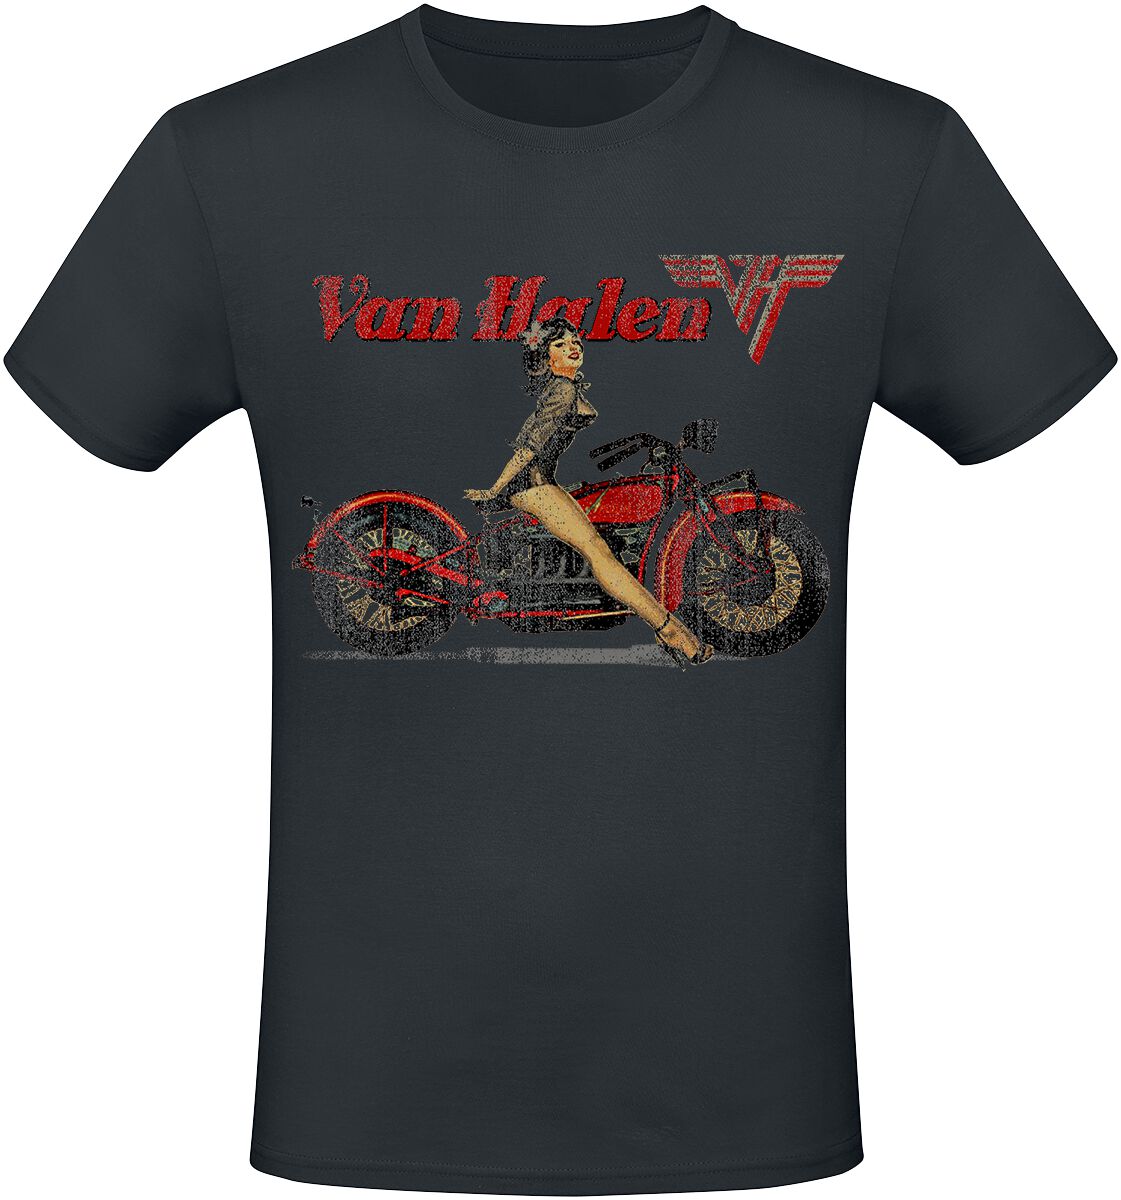 Van Halen T-Shirt - Pinup Motorcycle - S bis 3XL - für Männer - Größe 3XL - schwarz  - Lizenziertes Merchandise!